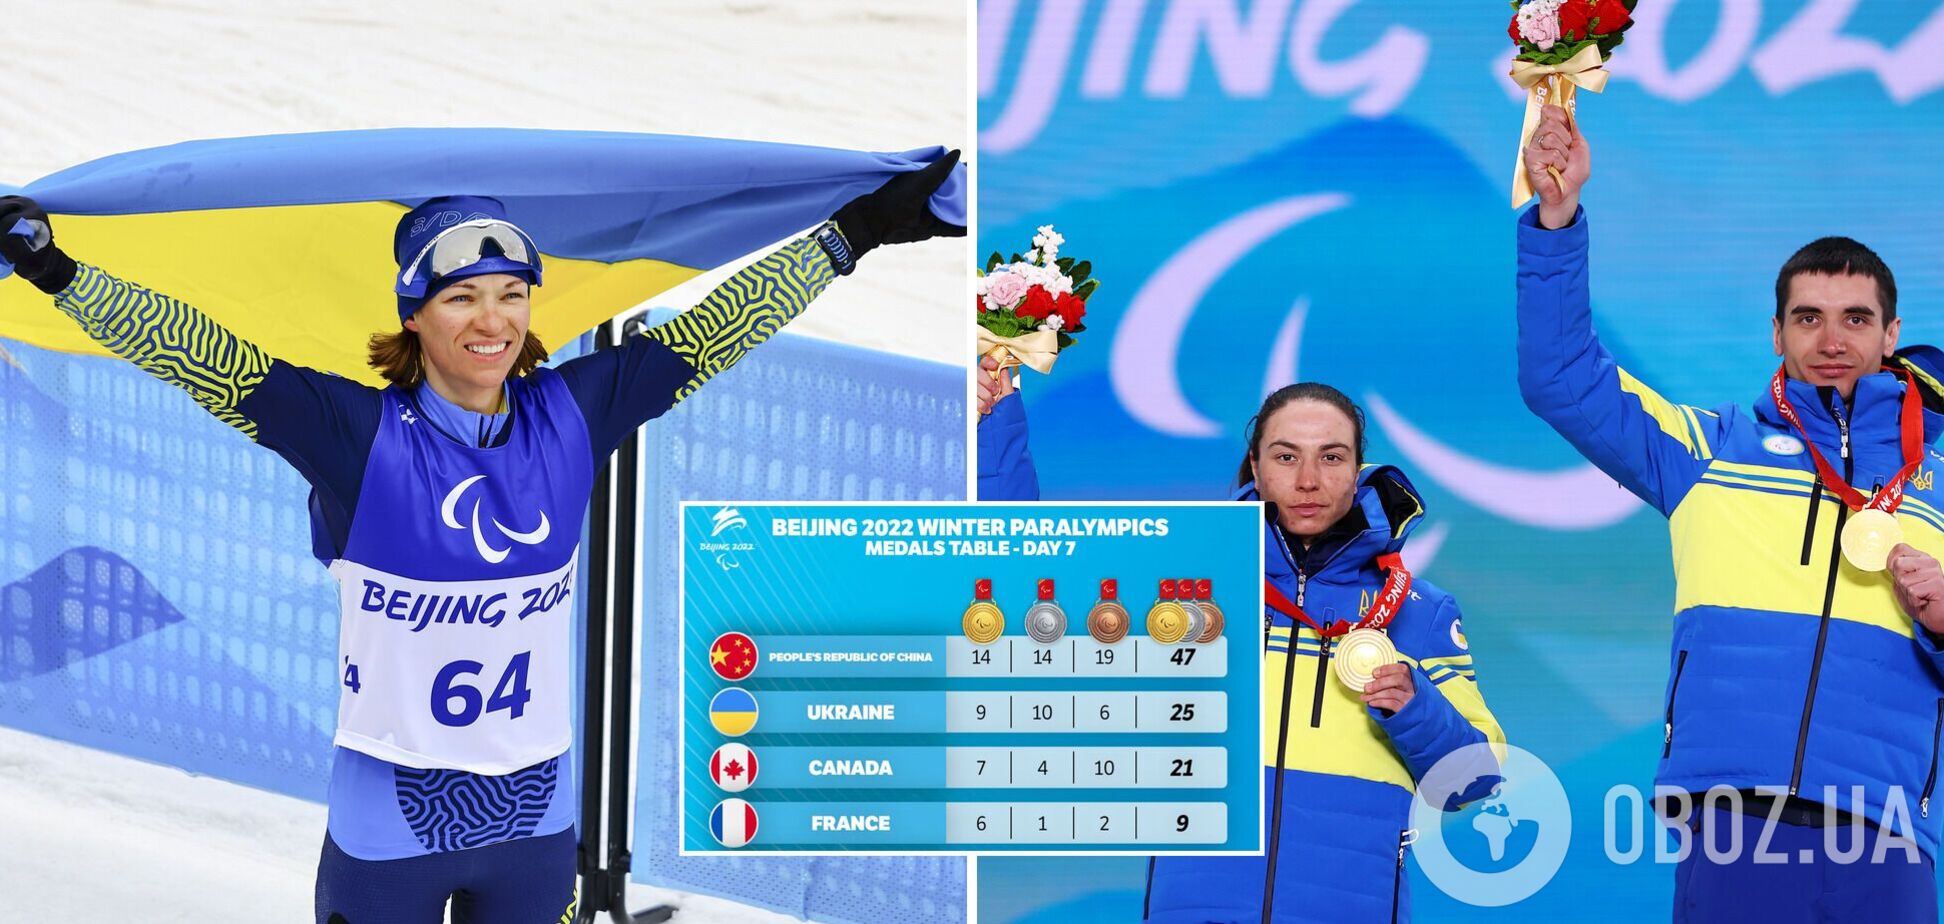 Украинцы установили рекорд зимних Паралимпиад по золотым медалям, одержав три победы за день в биатлоне